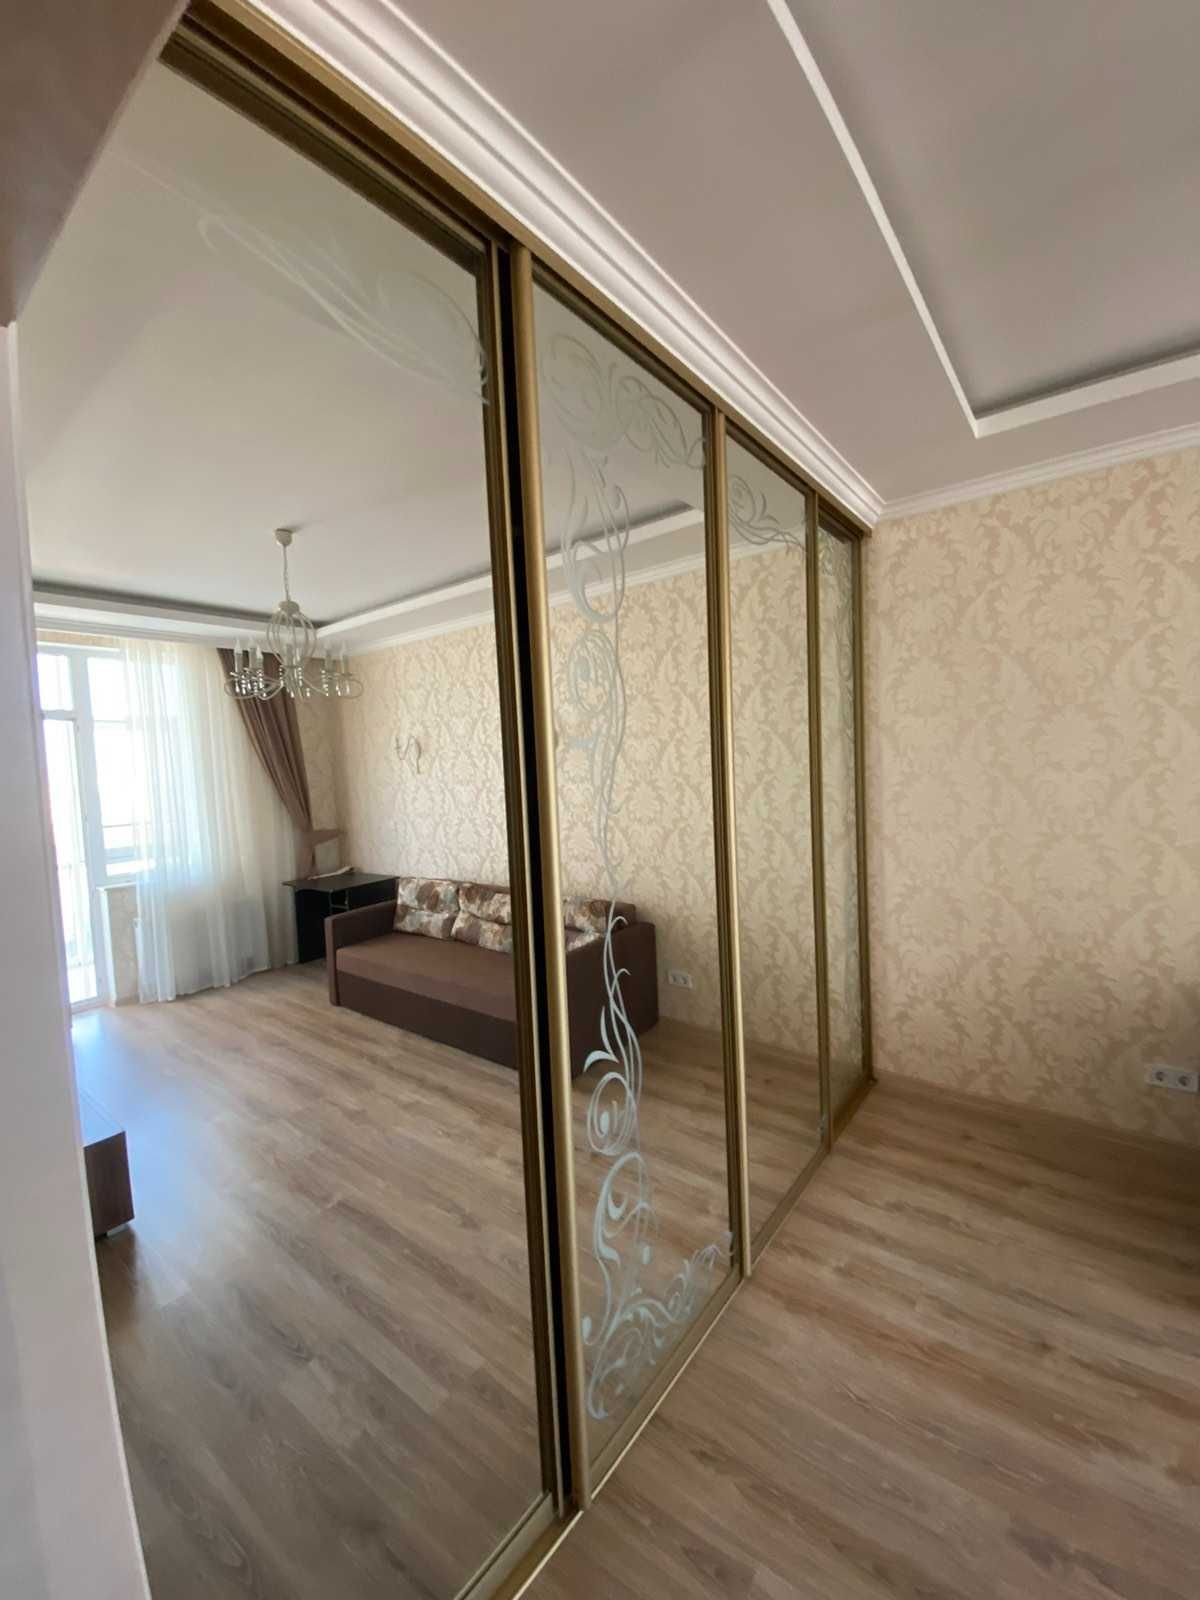 Сдам 2-комнатную квартиру в новом  элитном доме на Котовского!